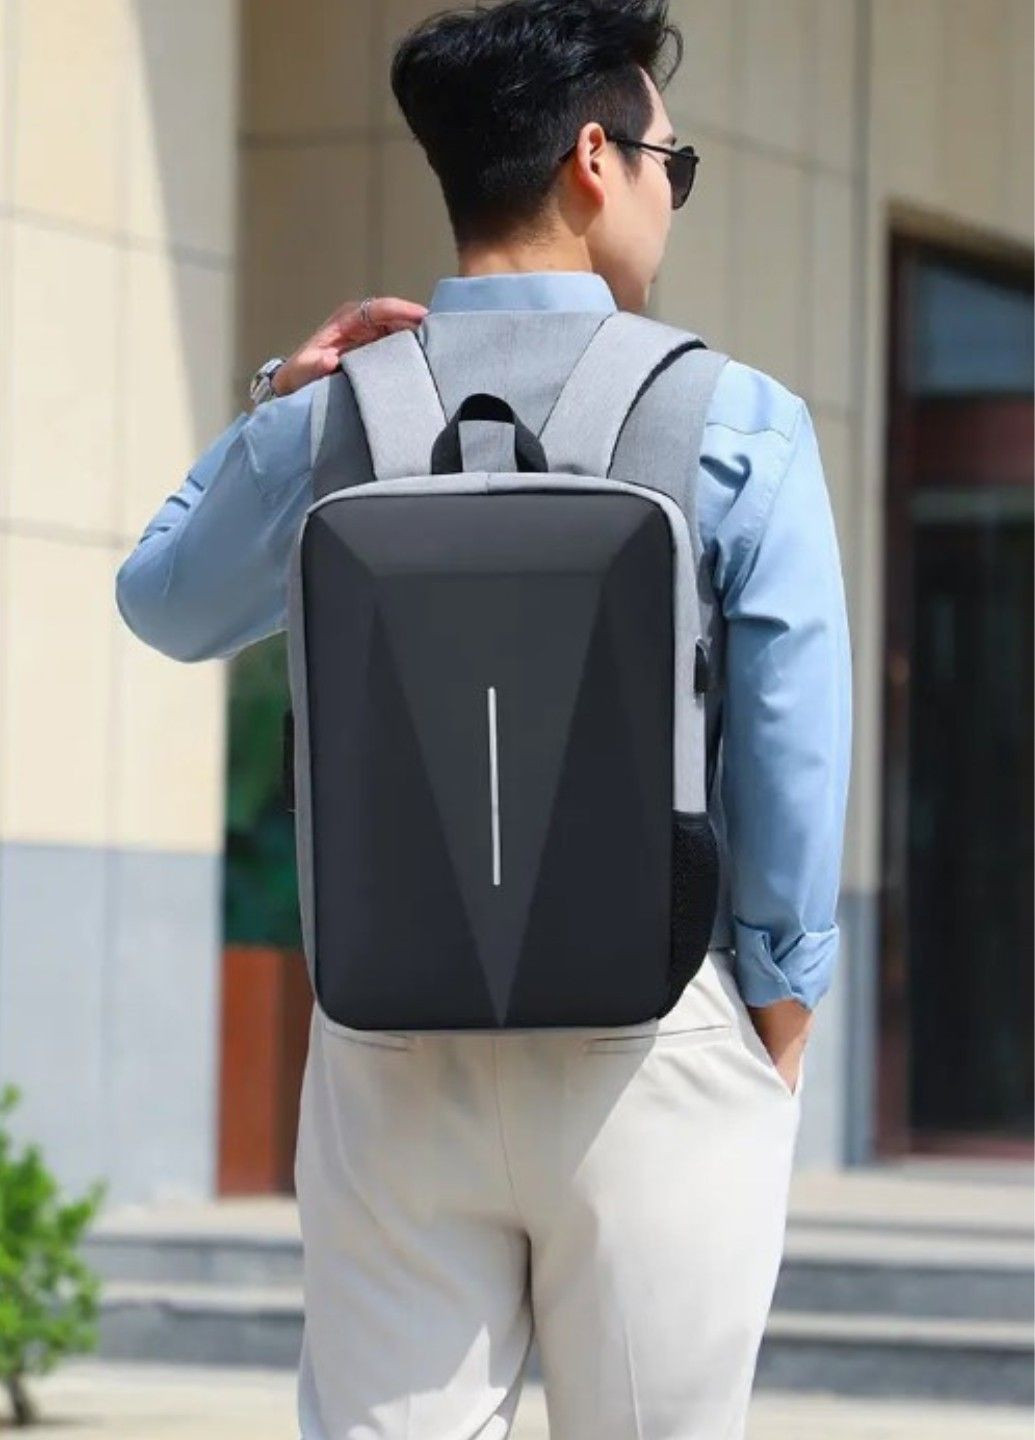 Сучасний міський чоловічий рюкзак Gray Cyber No Brand (292015546)